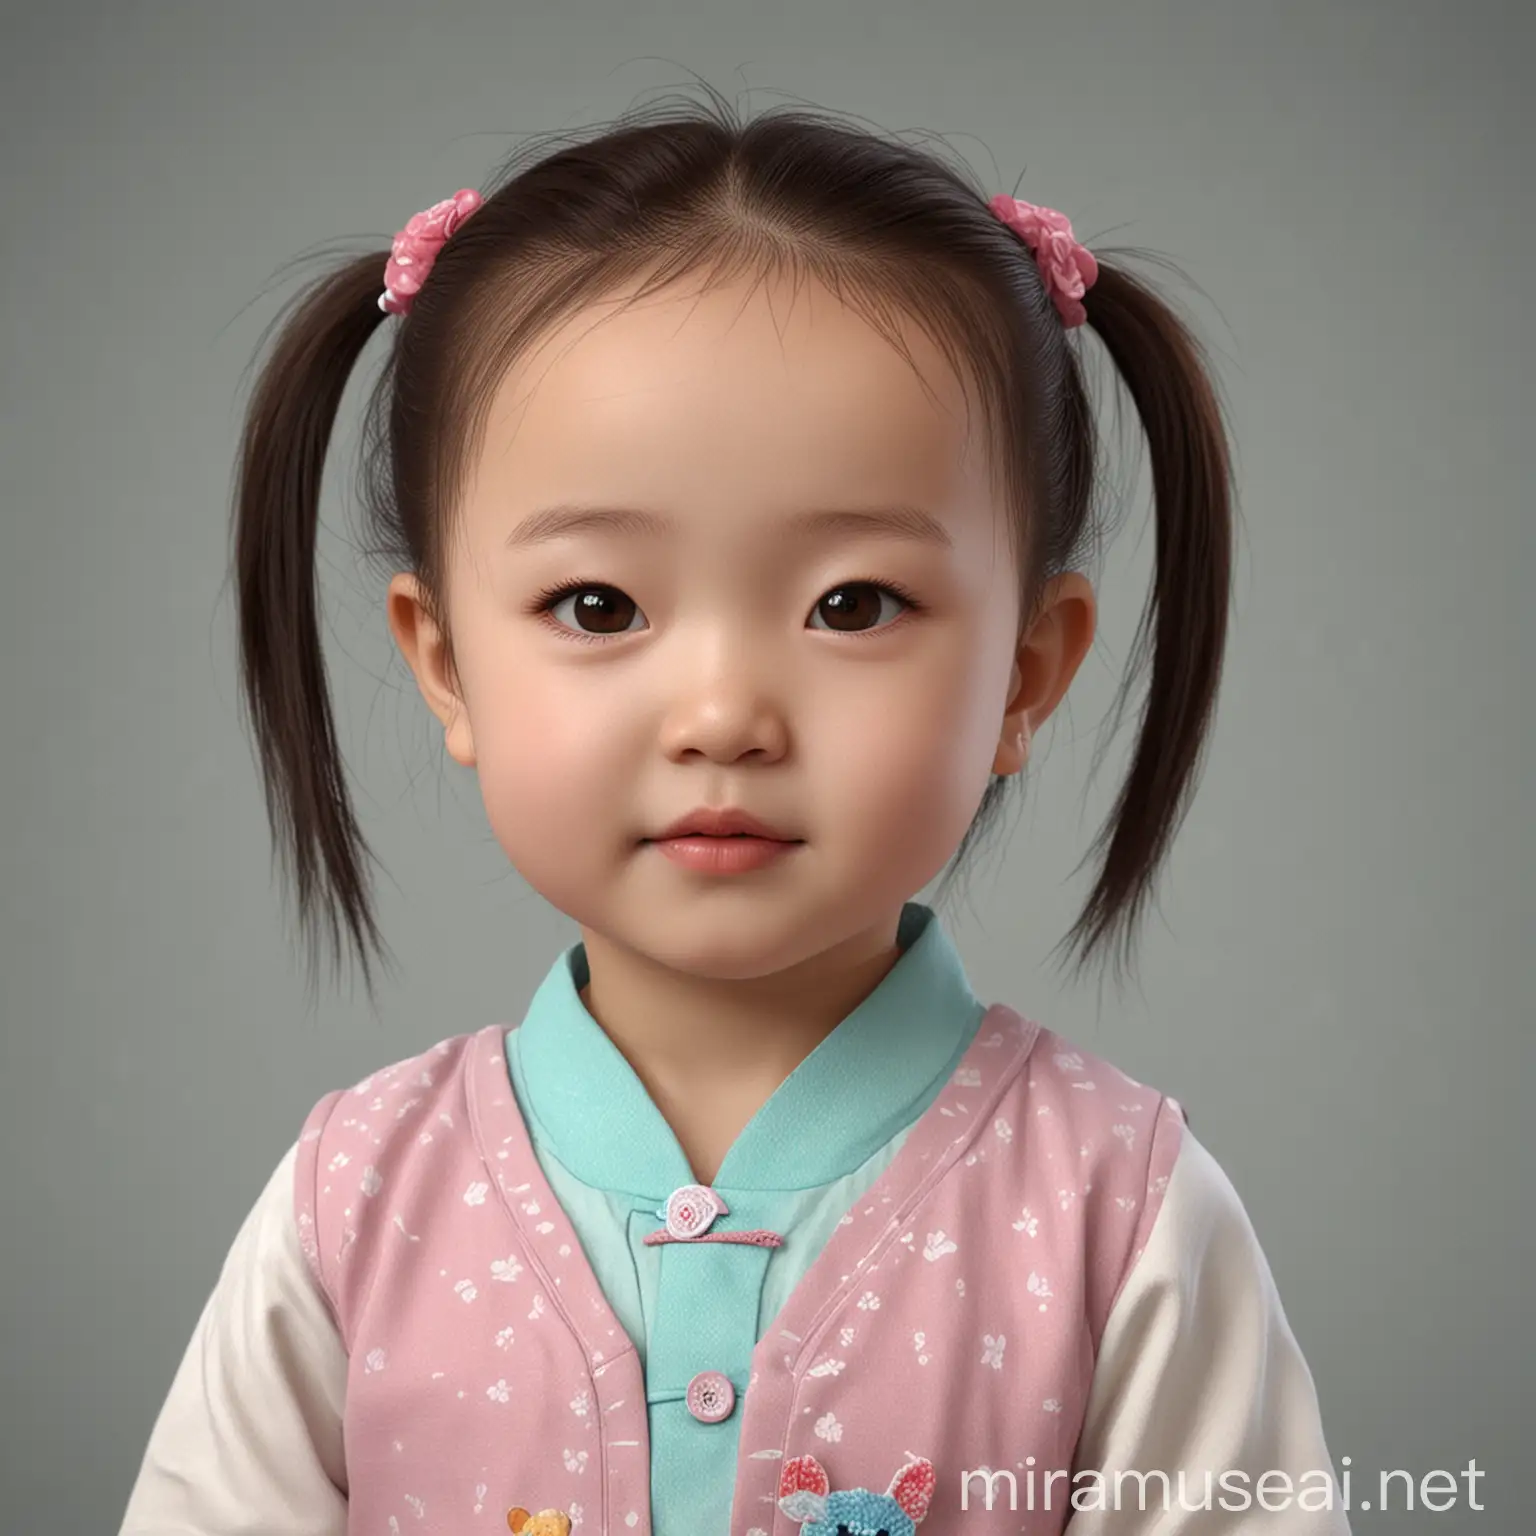 这是一张孩子的3维照片， 请预测一下孩子的长相， 中国小孩